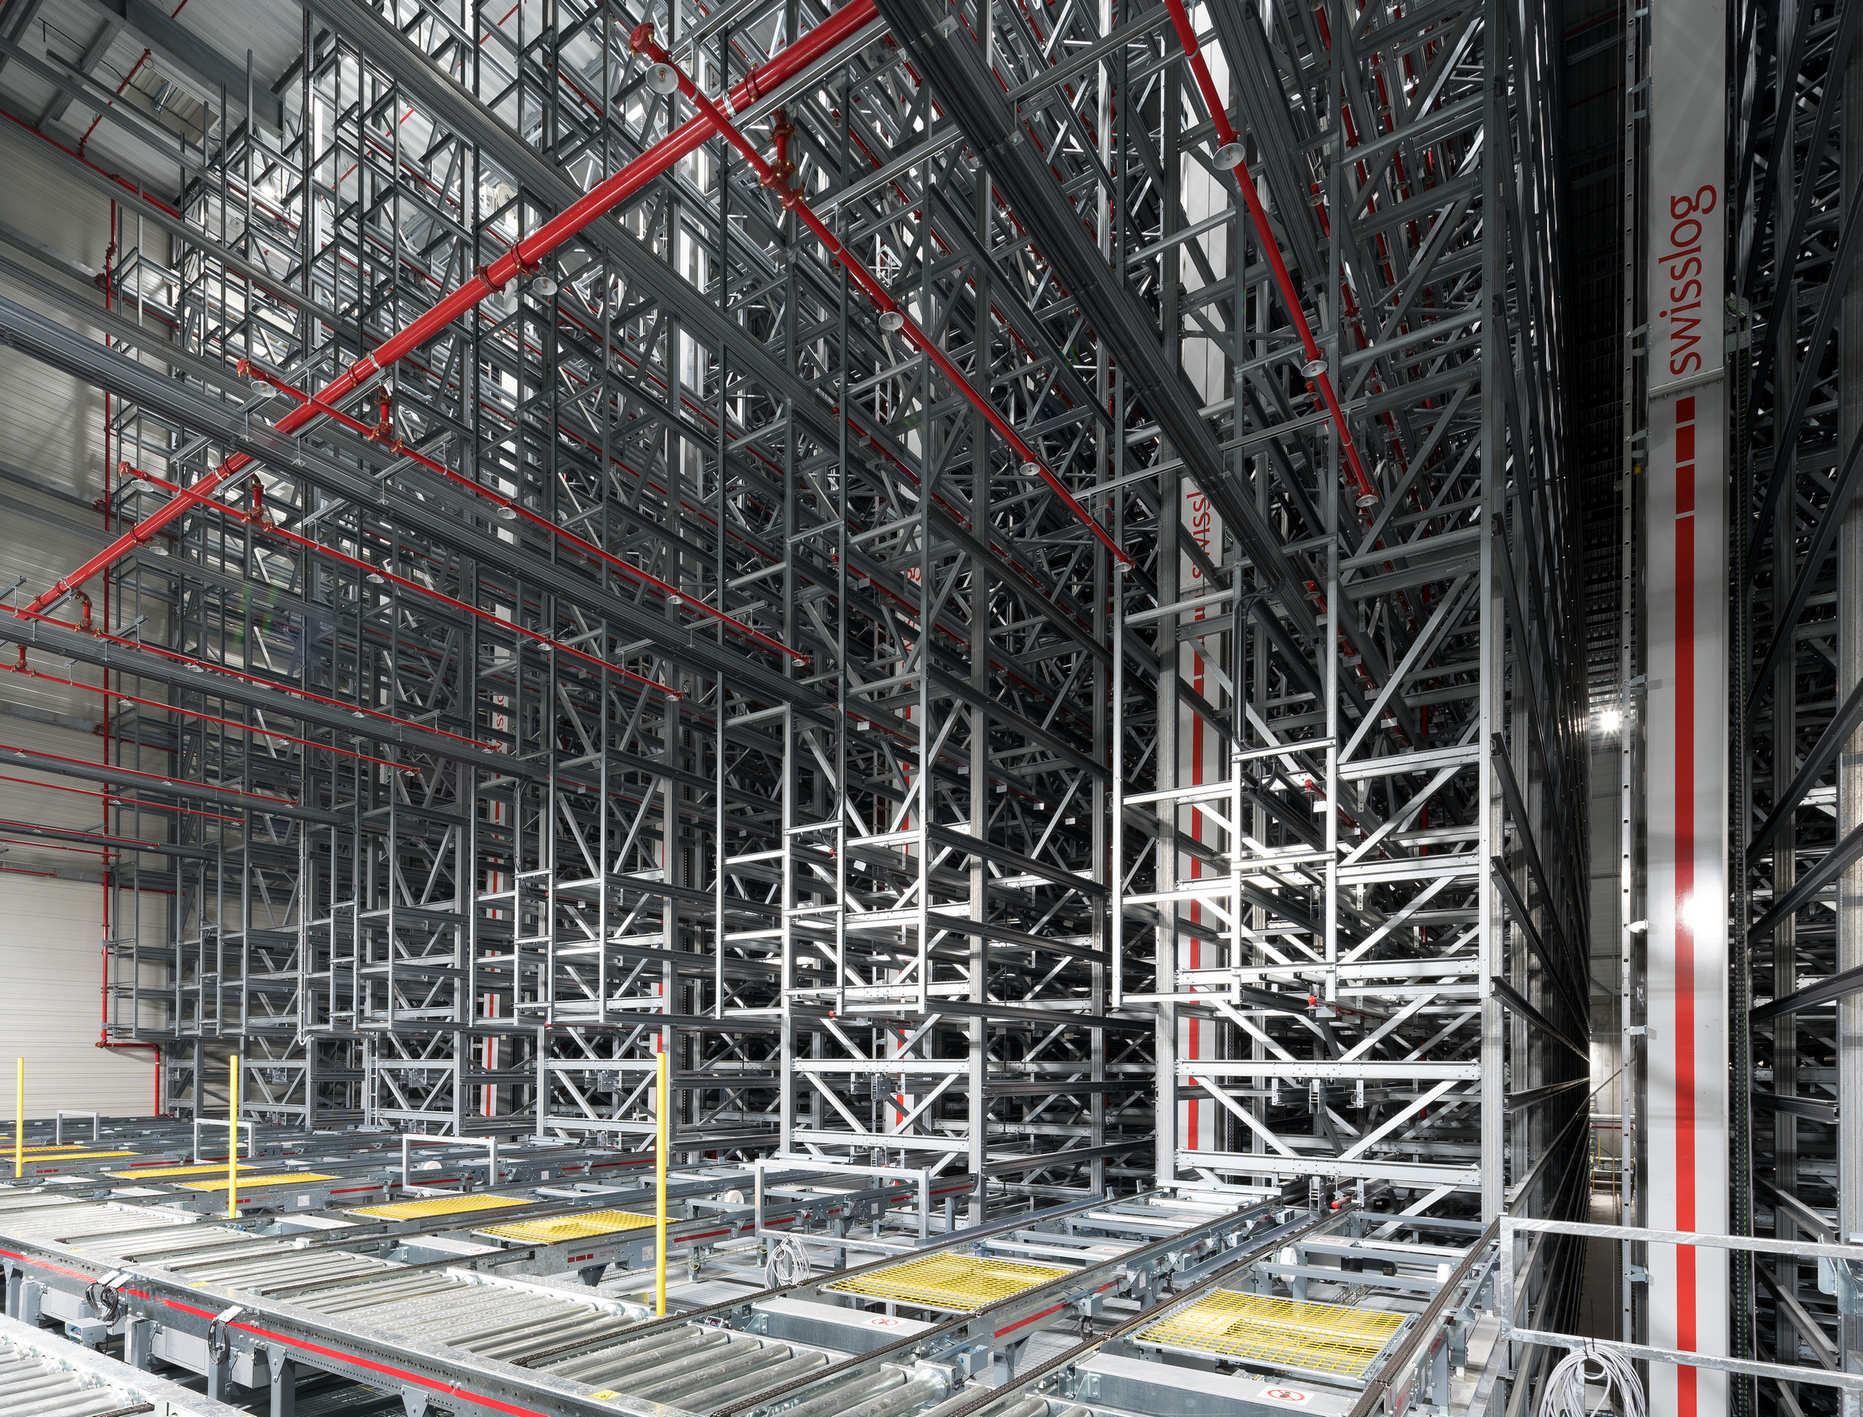 Et kig ind i højlageret tydeliggør dimensionerne: Syv lagerrobotter styrer fuldautomatisk de 15.000 Europa-pallepladser.